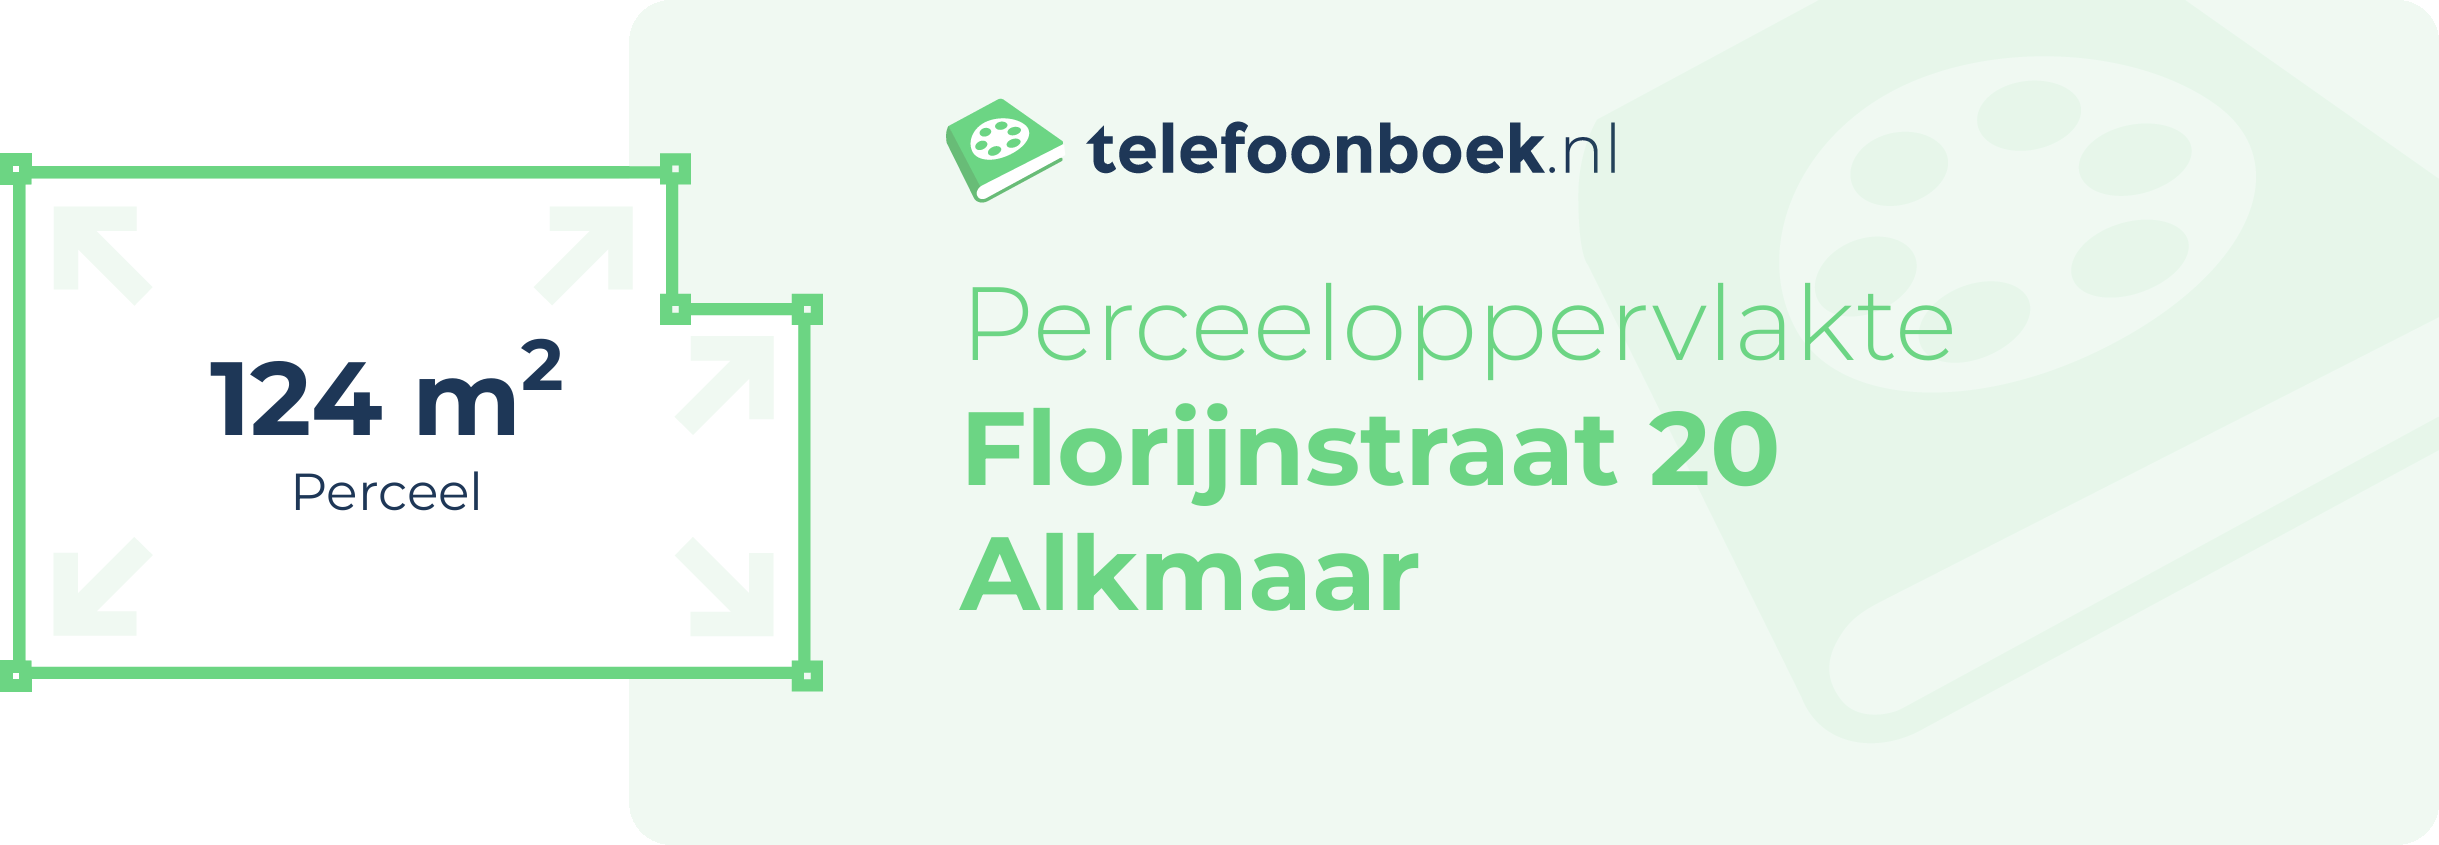 Perceeloppervlakte Florijnstraat 20 Alkmaar